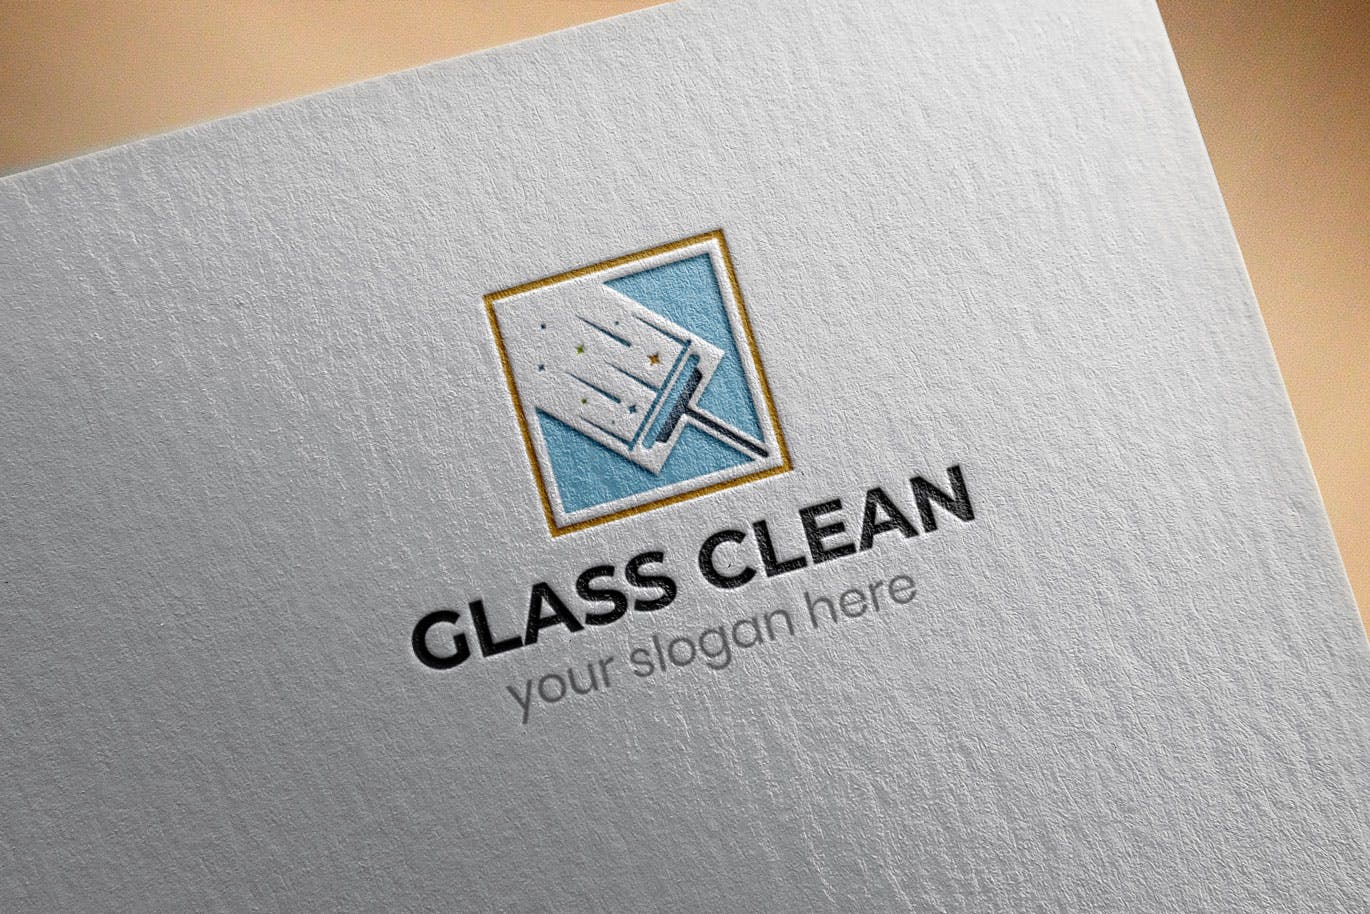 玻璃清洁服务Logo设计第一素材精选模板 Glass Clean Business Logo Template插图(2)